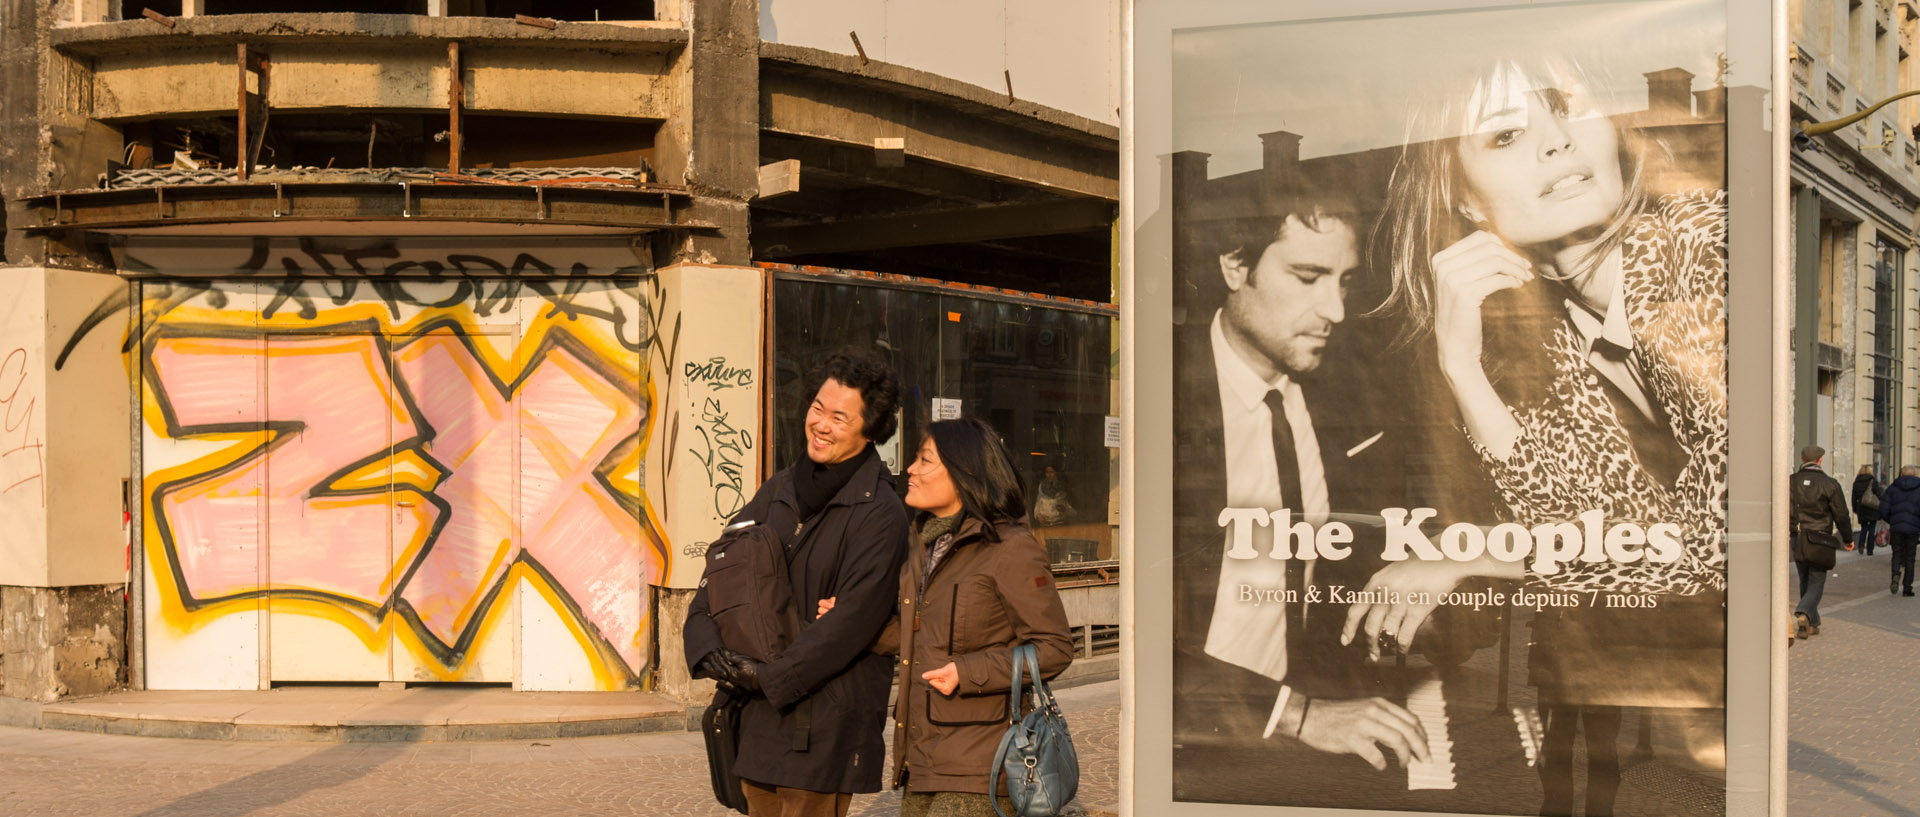 Couple asiatique passant à côté d'une affiche publicitaire, rue Faidherbe, à Lille.